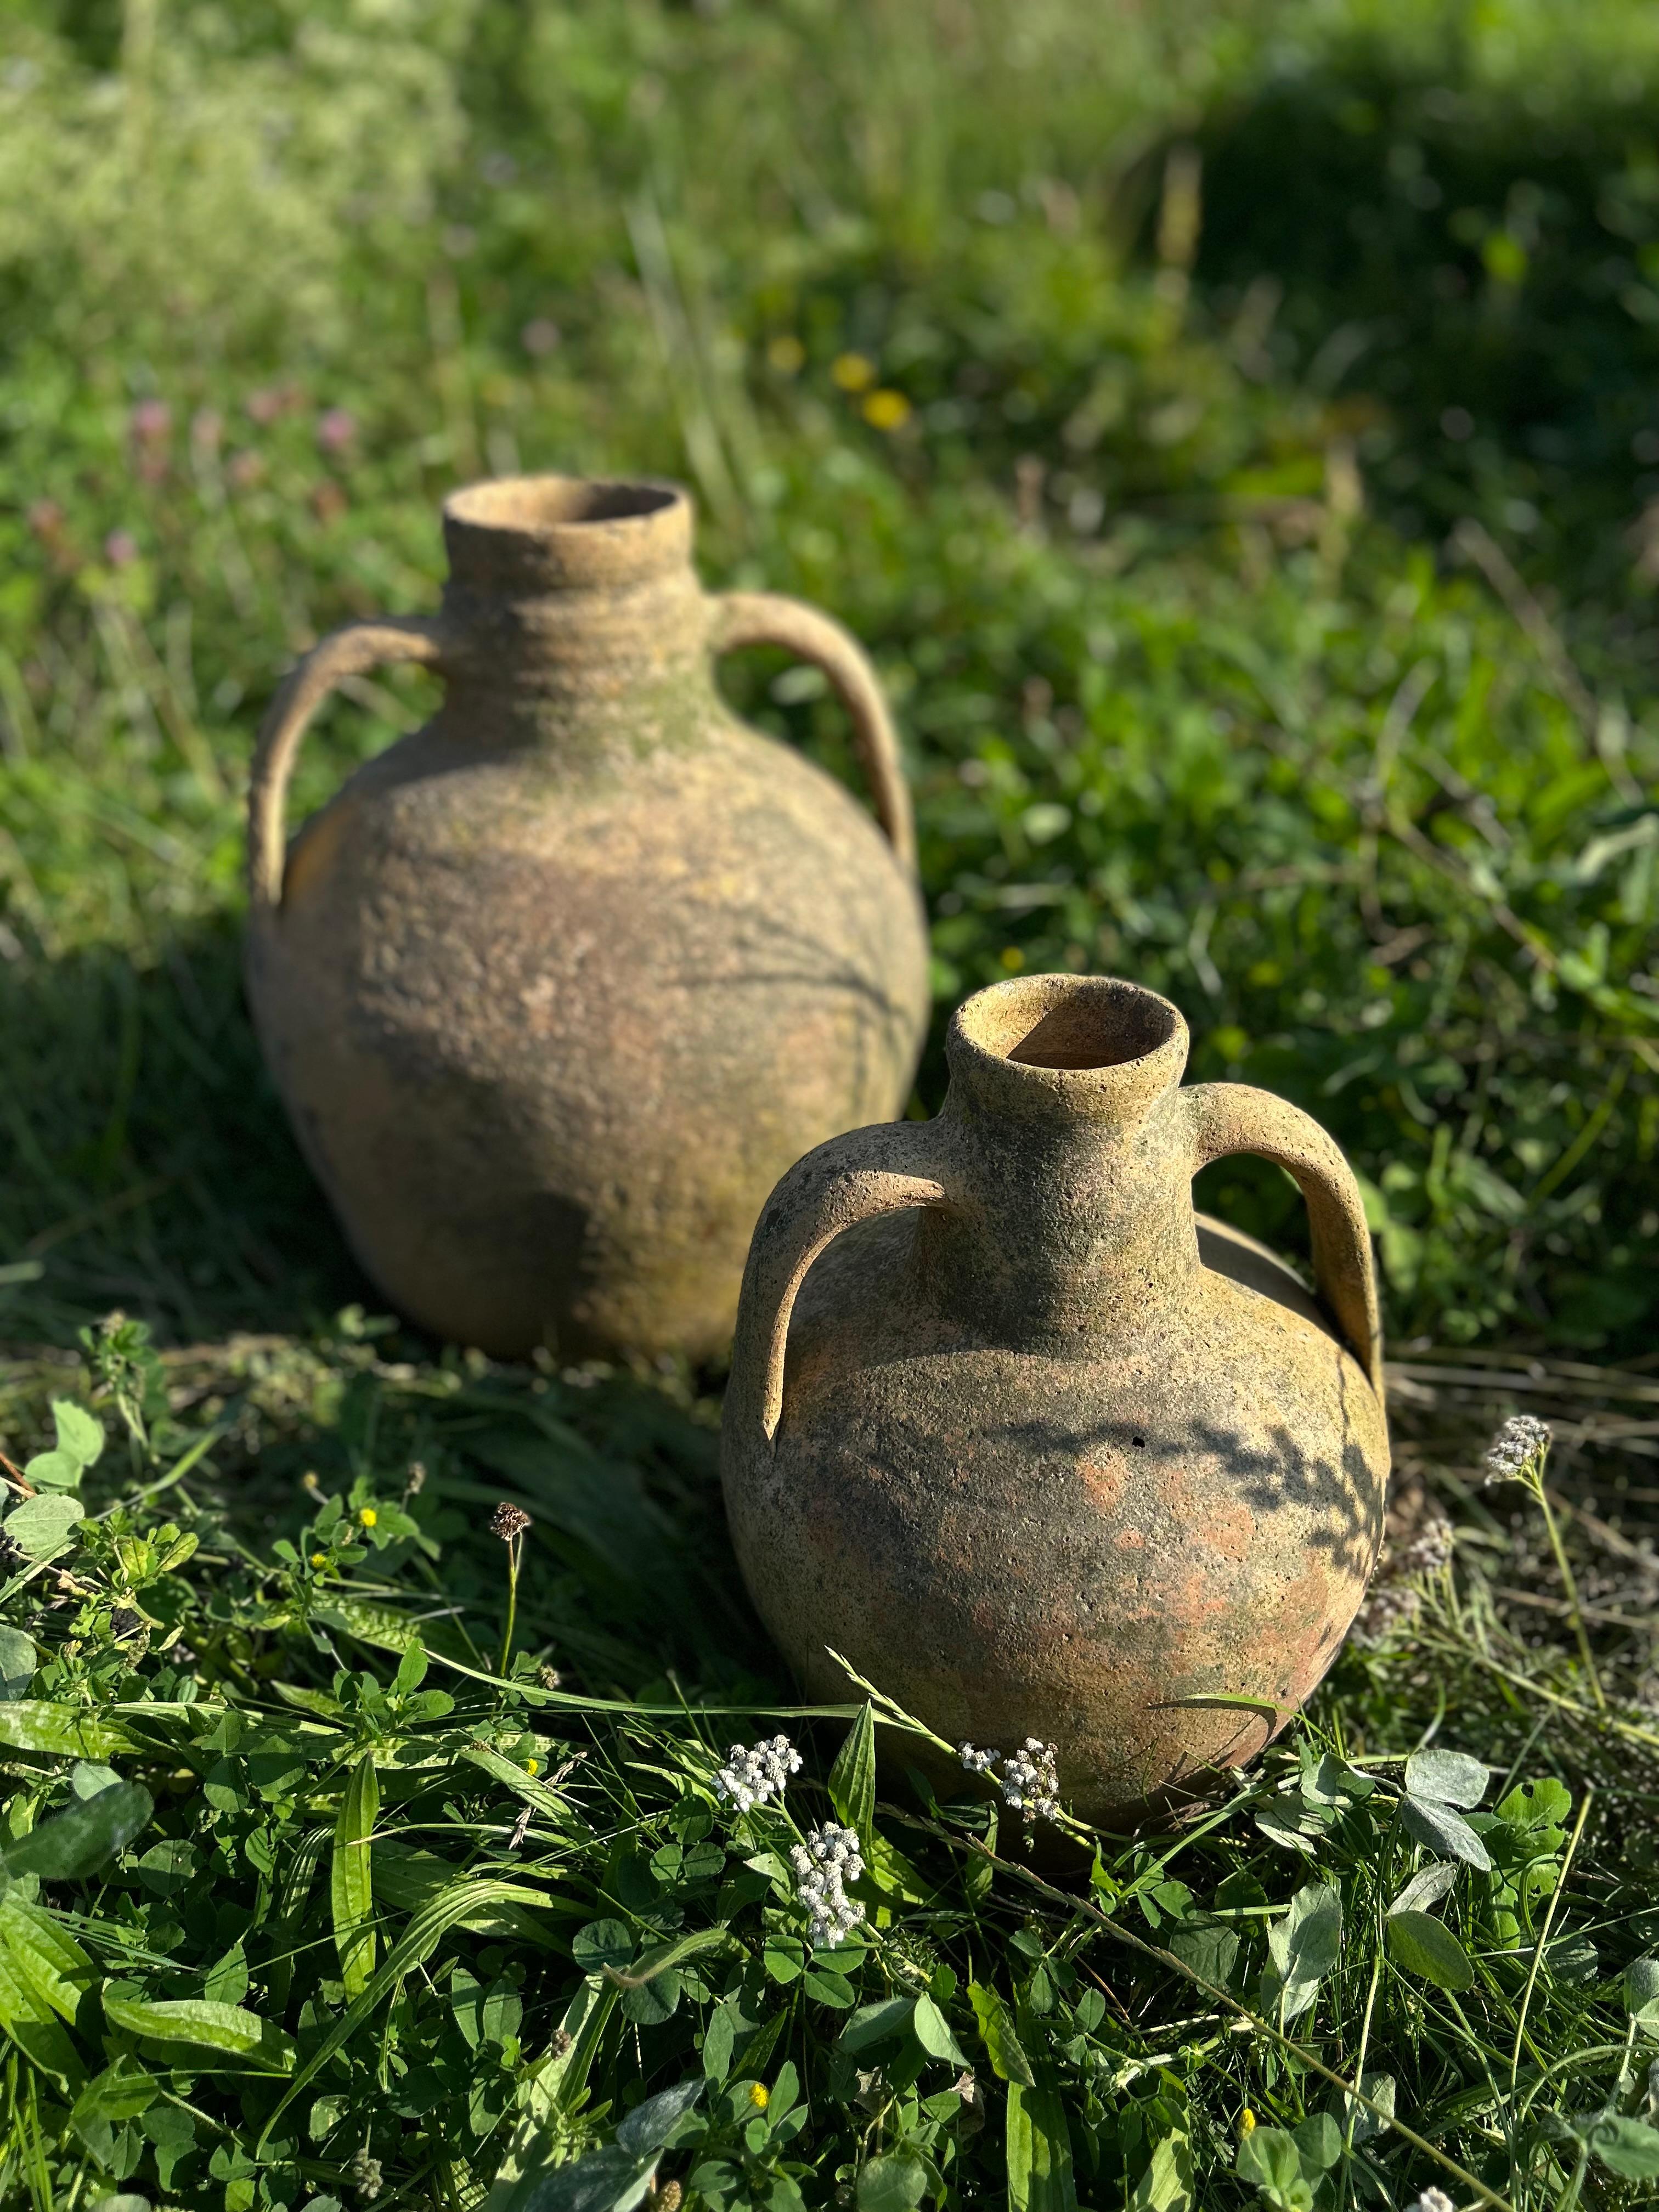 Le charme intemporel de la Méditerranée se retrouve dans cette paire de jarres à olives rustiques en terre cuite, datant du début du XXe siècle. Fabriquées avec un art méticuleux, ces jarres exhalent la chaleur des oliveraies et de la campagne